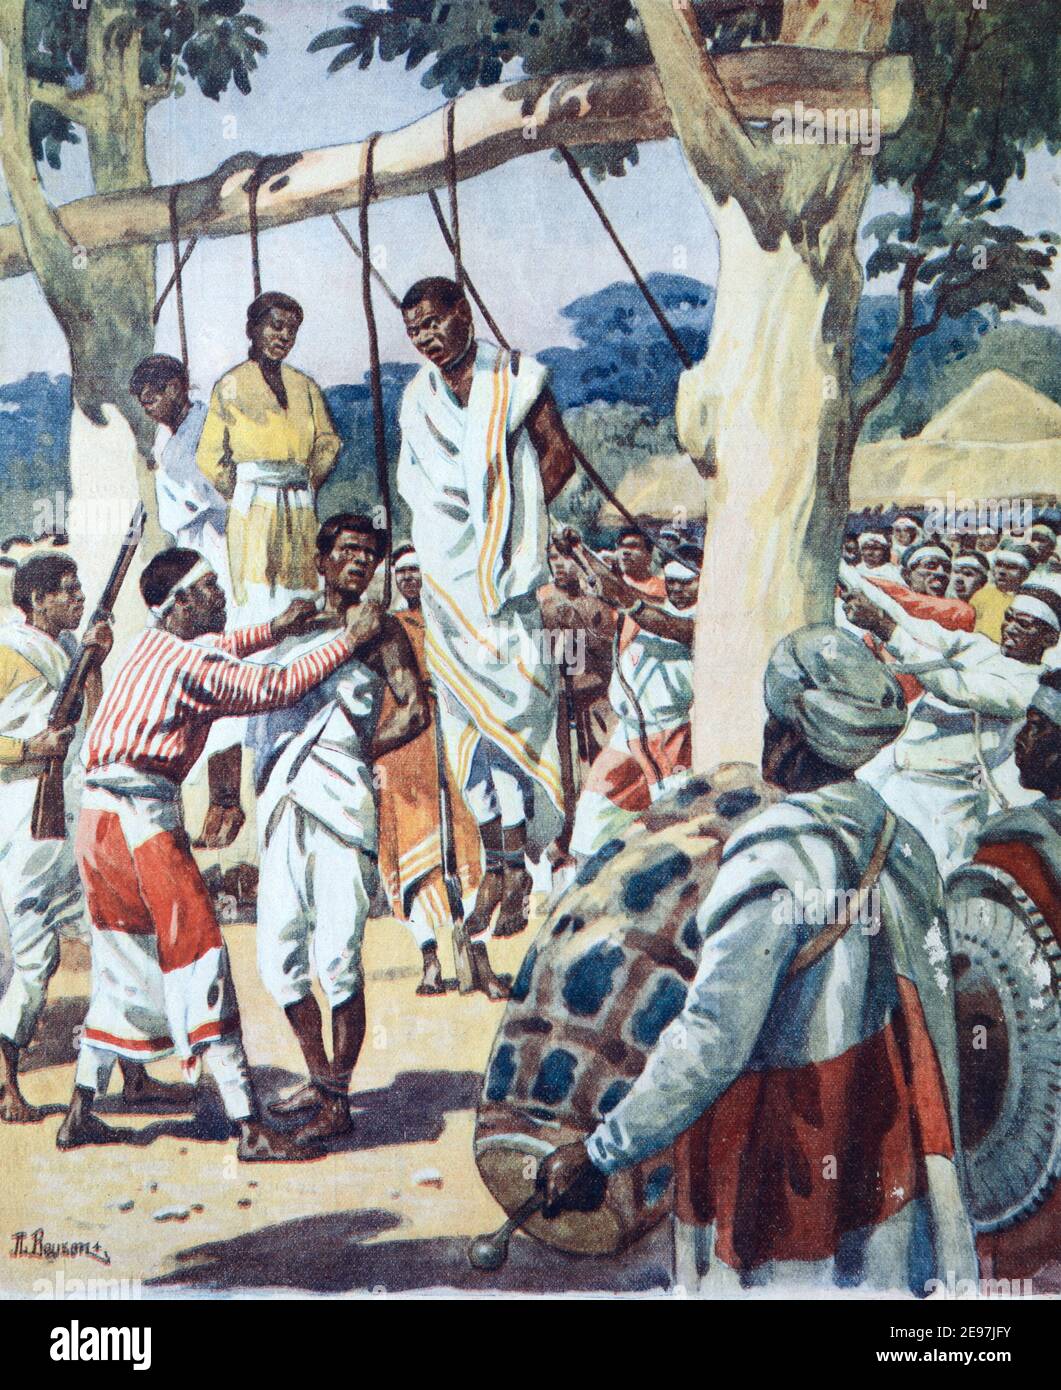 Die Menge versammelt sich, um das öffentliche Aufhängen oder die Hinrichtung in Abessinien zu beobachten Äthiopien Afrika 1911 Vintage Illustration oder Gravur Stockfoto